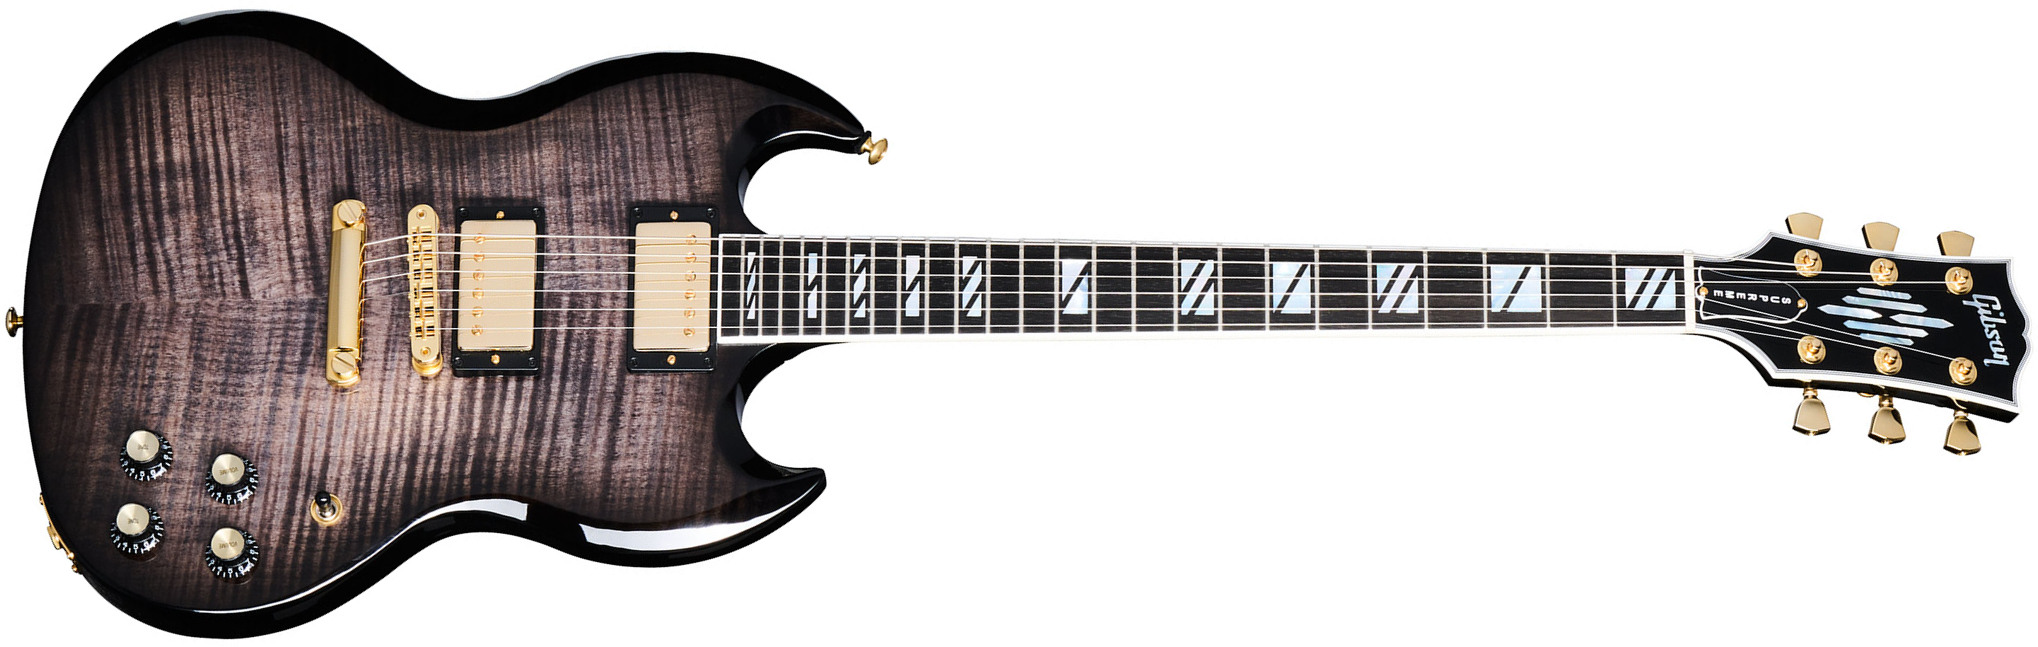 Gibson Sg Supreme Usa 2h Ht Rw - Translucent Ebony Burst - Guitare Électrique Double Cut - Main picture